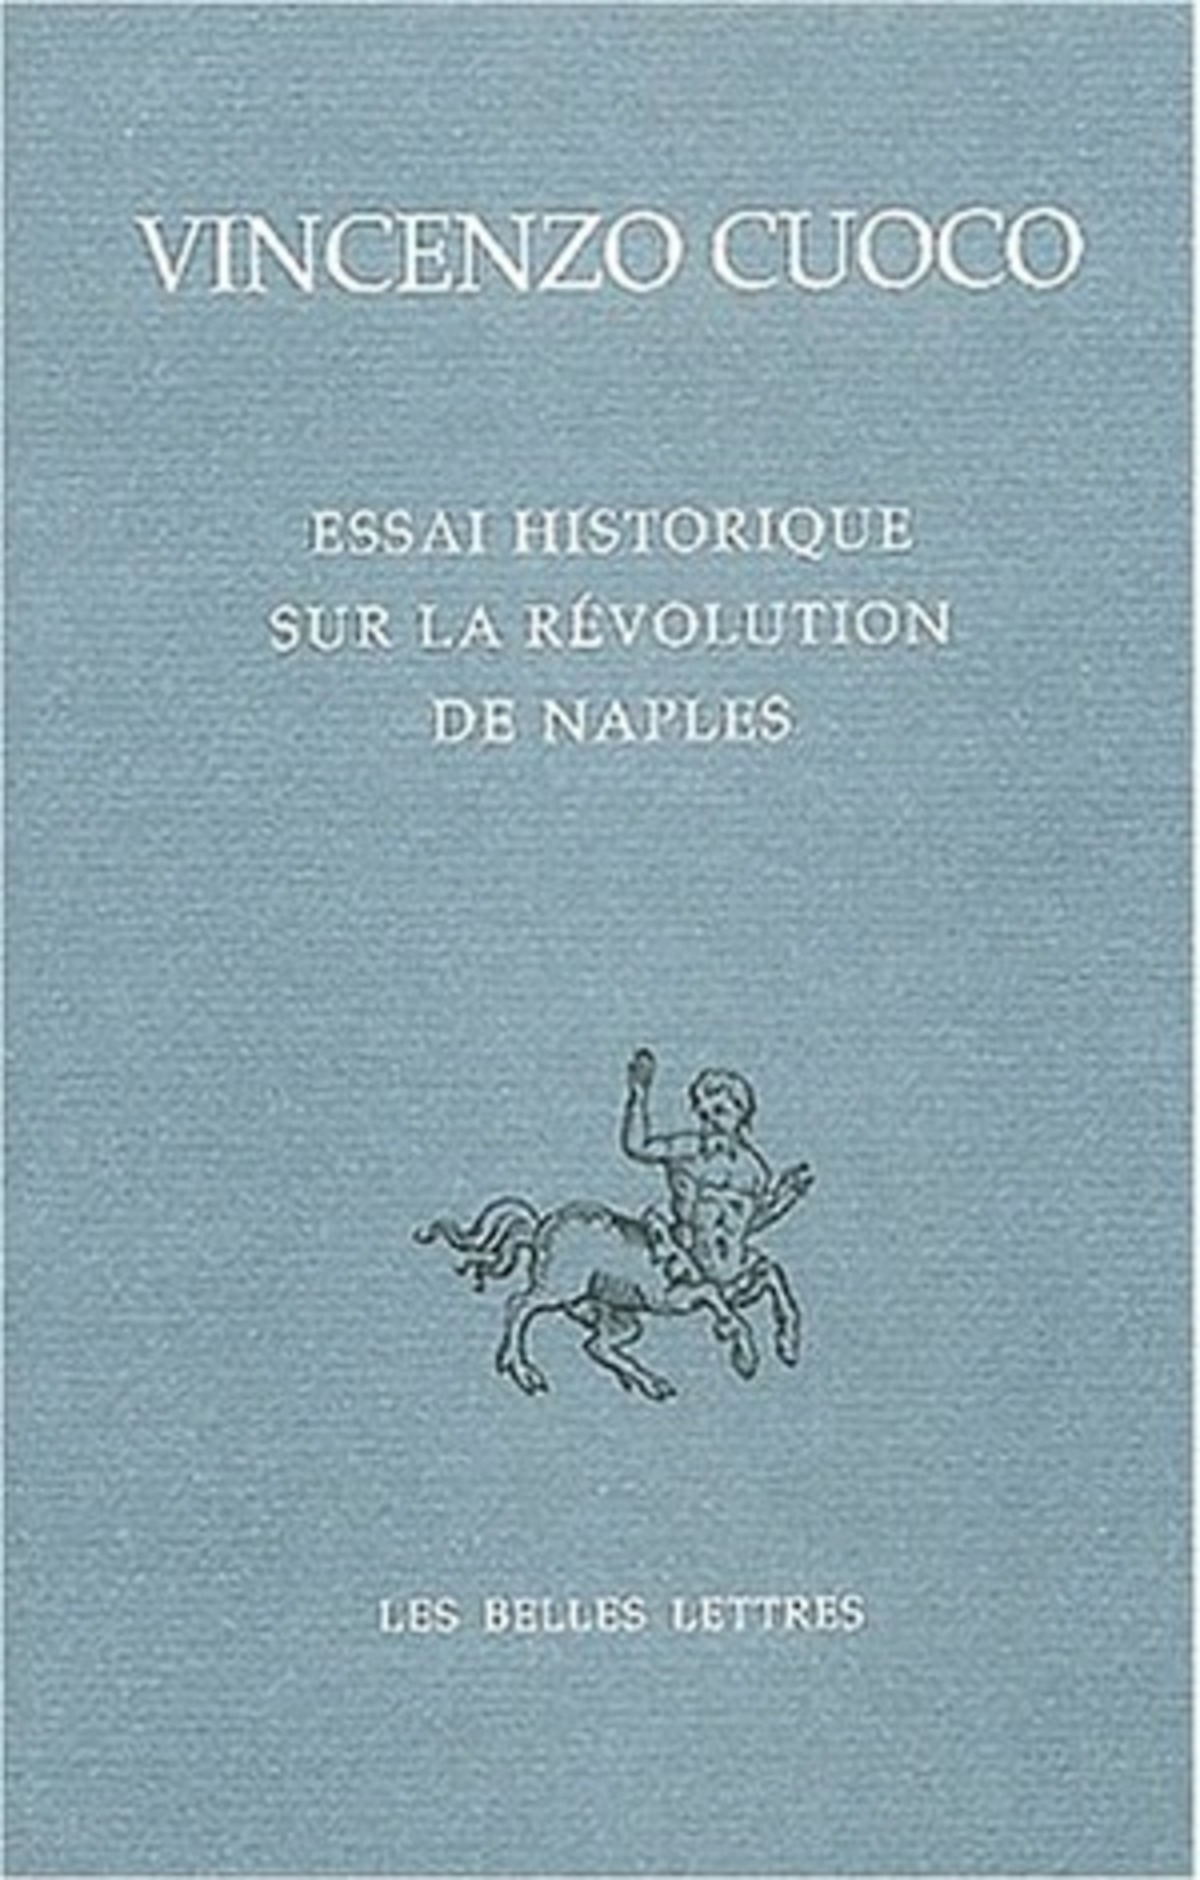 Essai historique sur la révolution de Naples